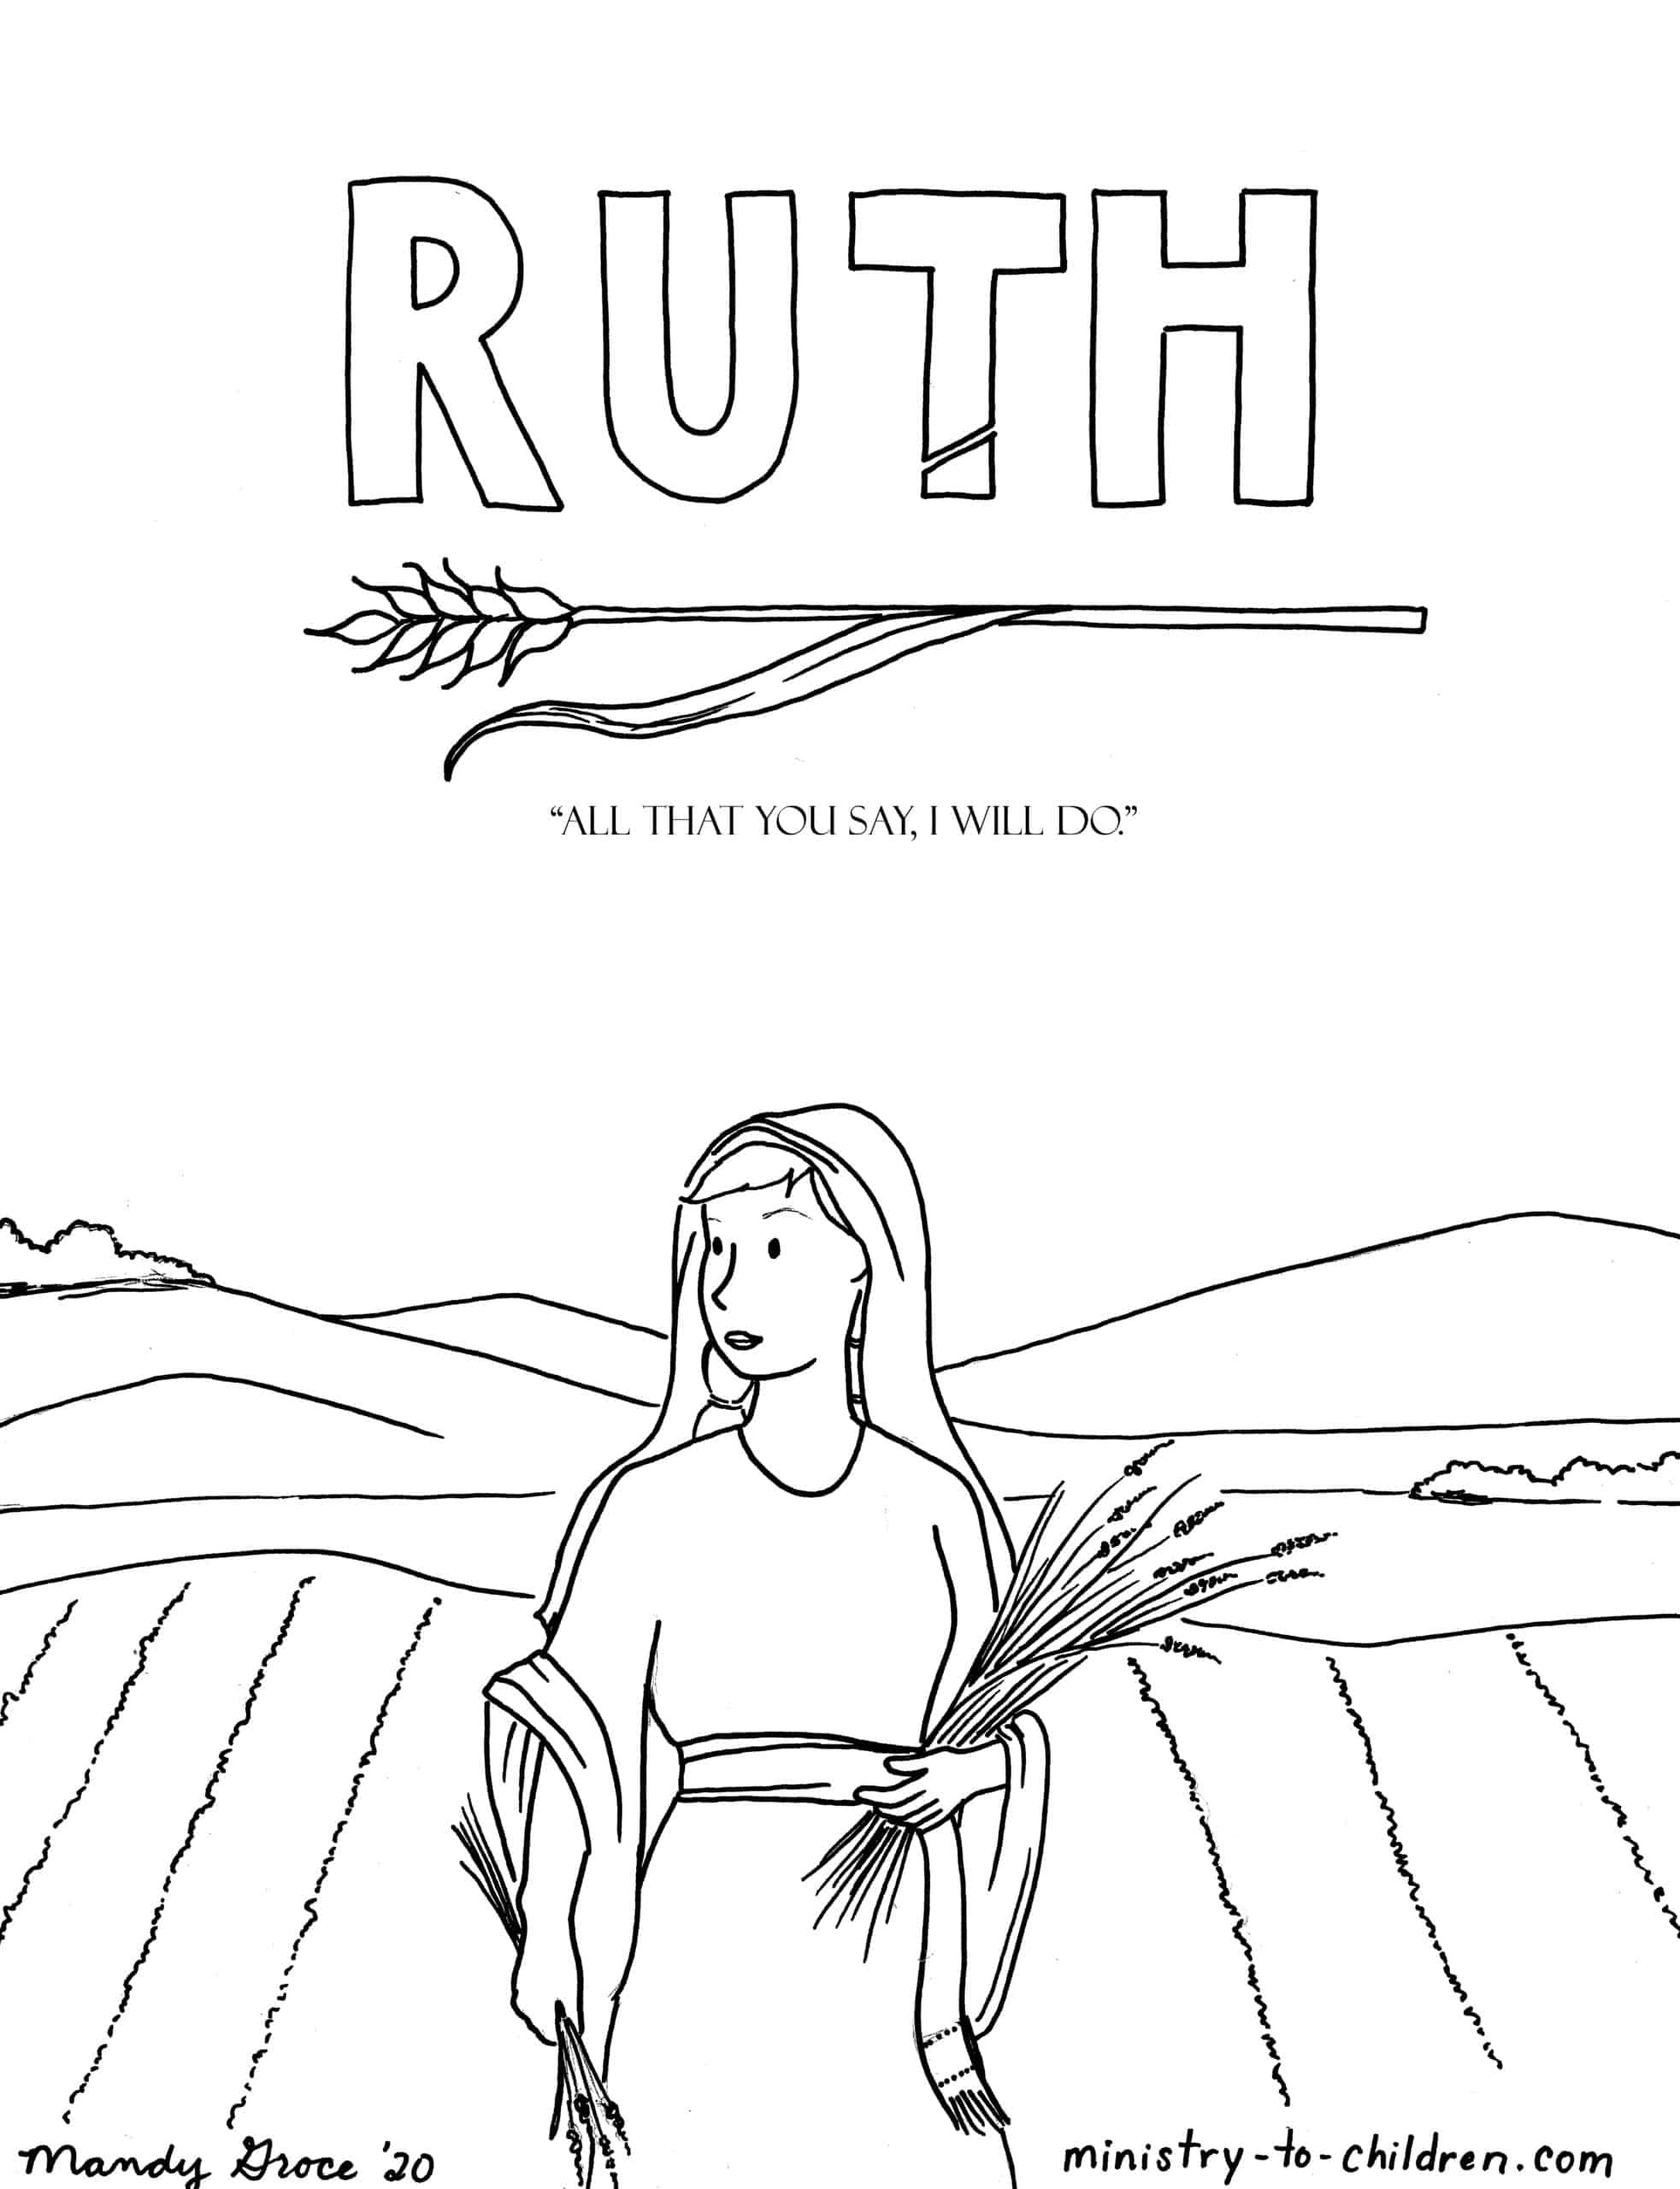 Free Printable Bible Study On Ruth